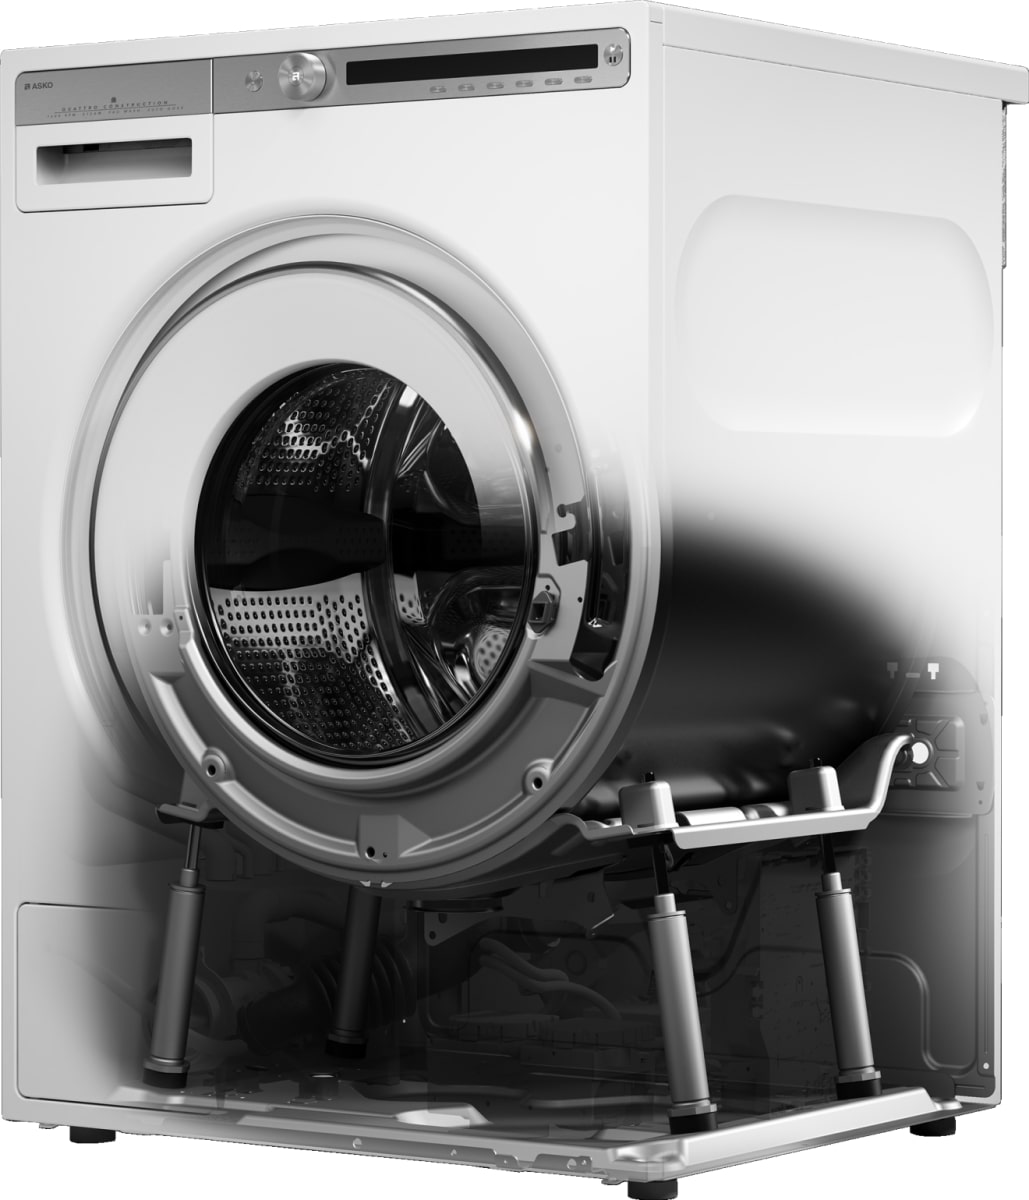 Замена сливного насоса стиральной машины самостоятельно